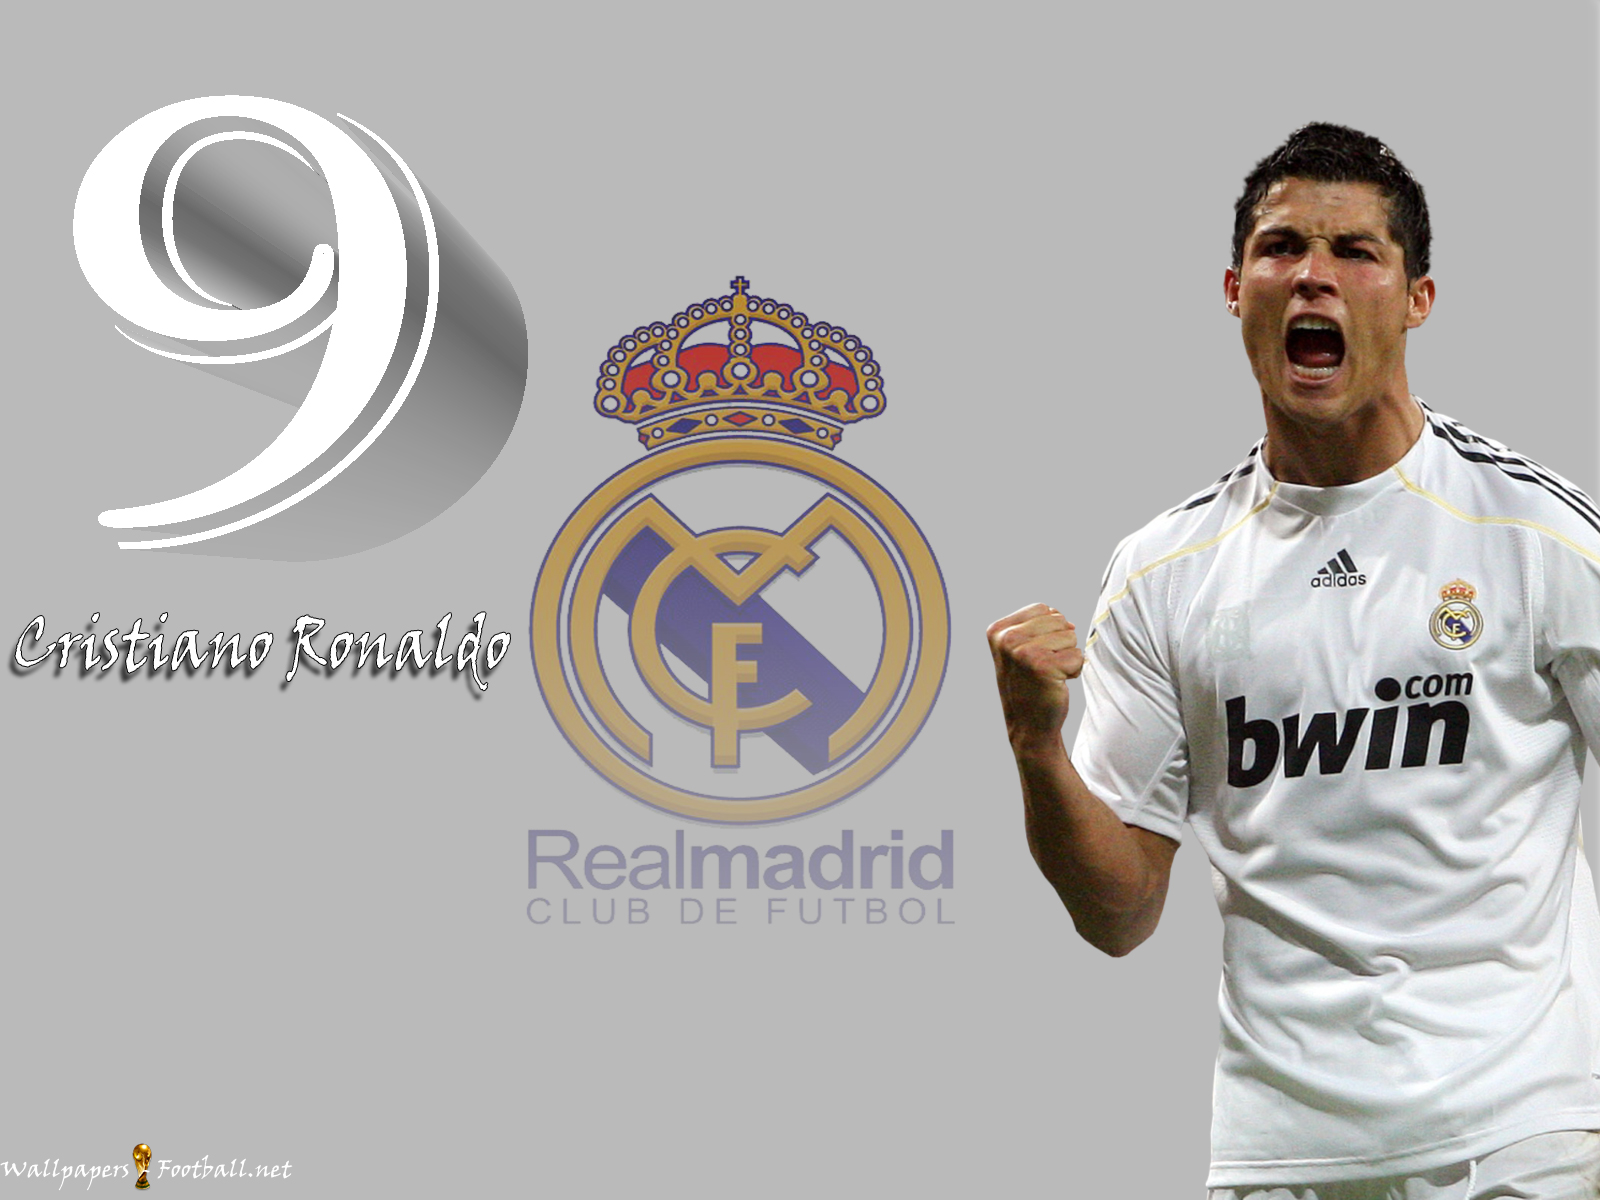 دانلود برنامه 🔥 Cristiano Ronaldo Wallpaper - cr7 fondos HD 4K